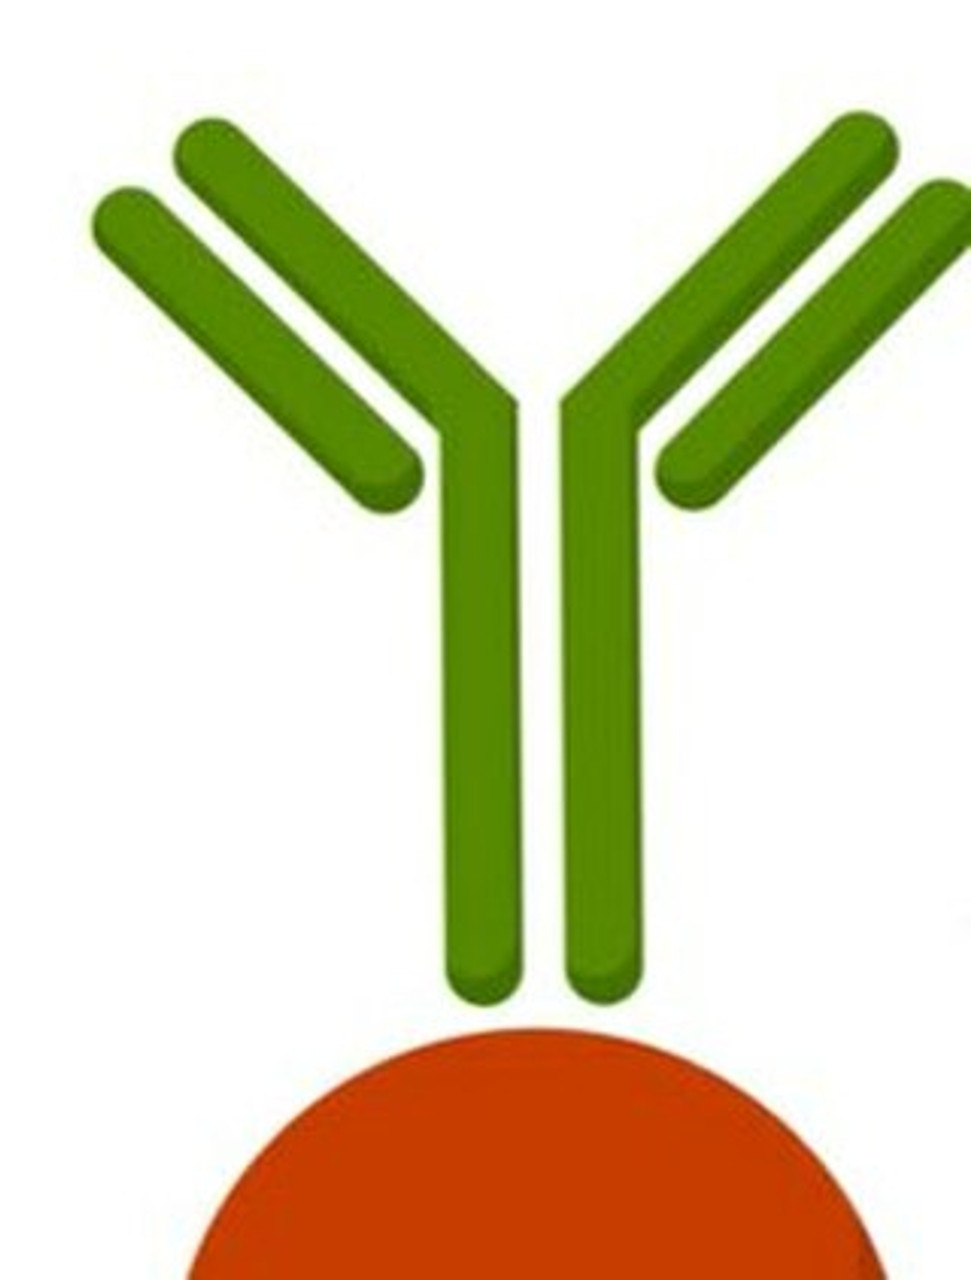 XCL1/2 Antibody